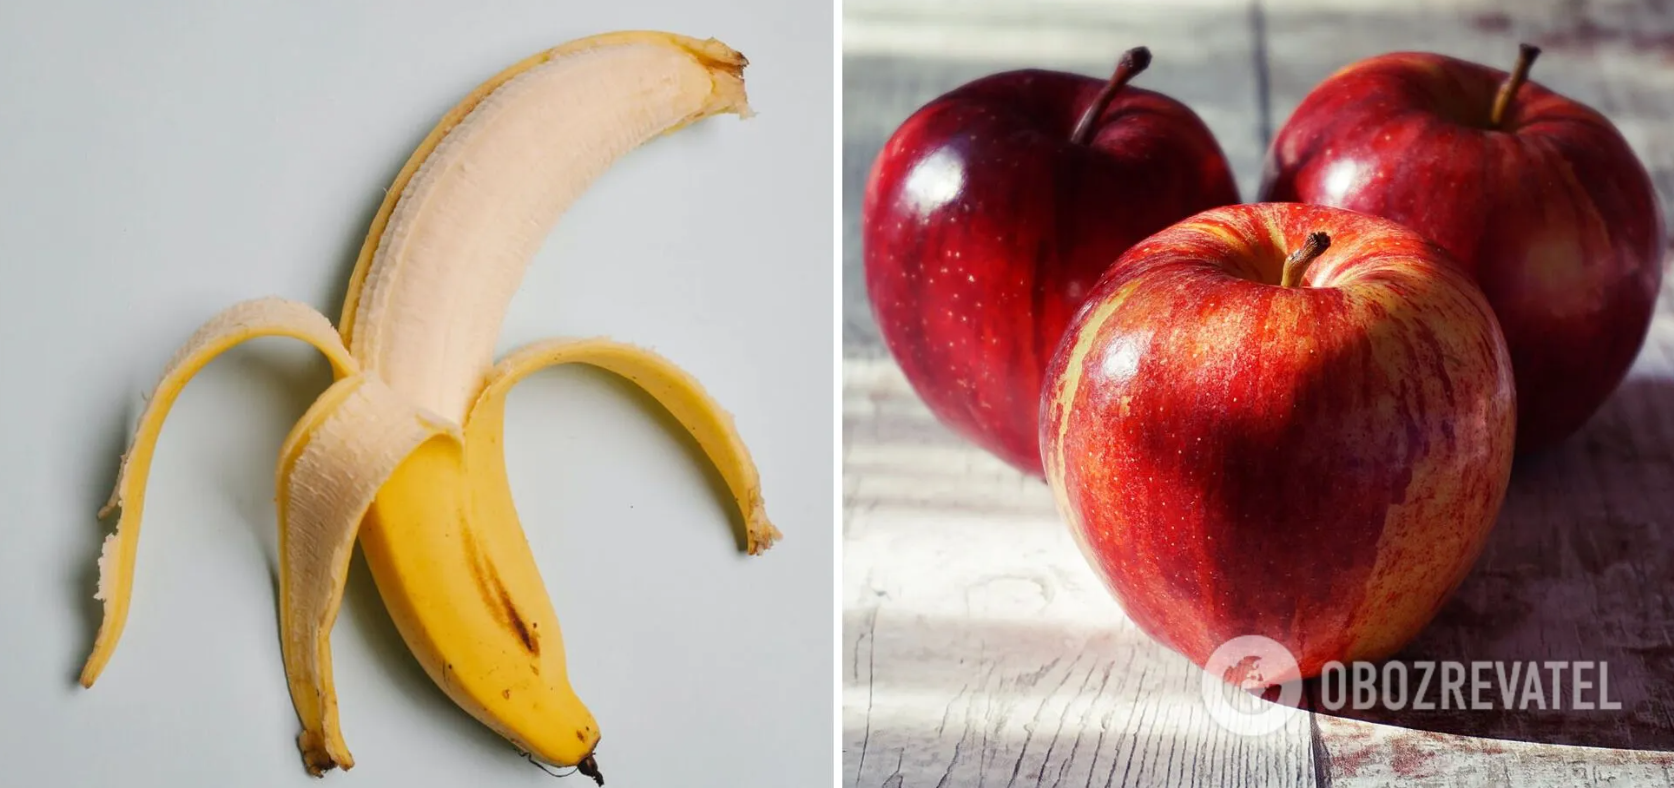 Banana and apple